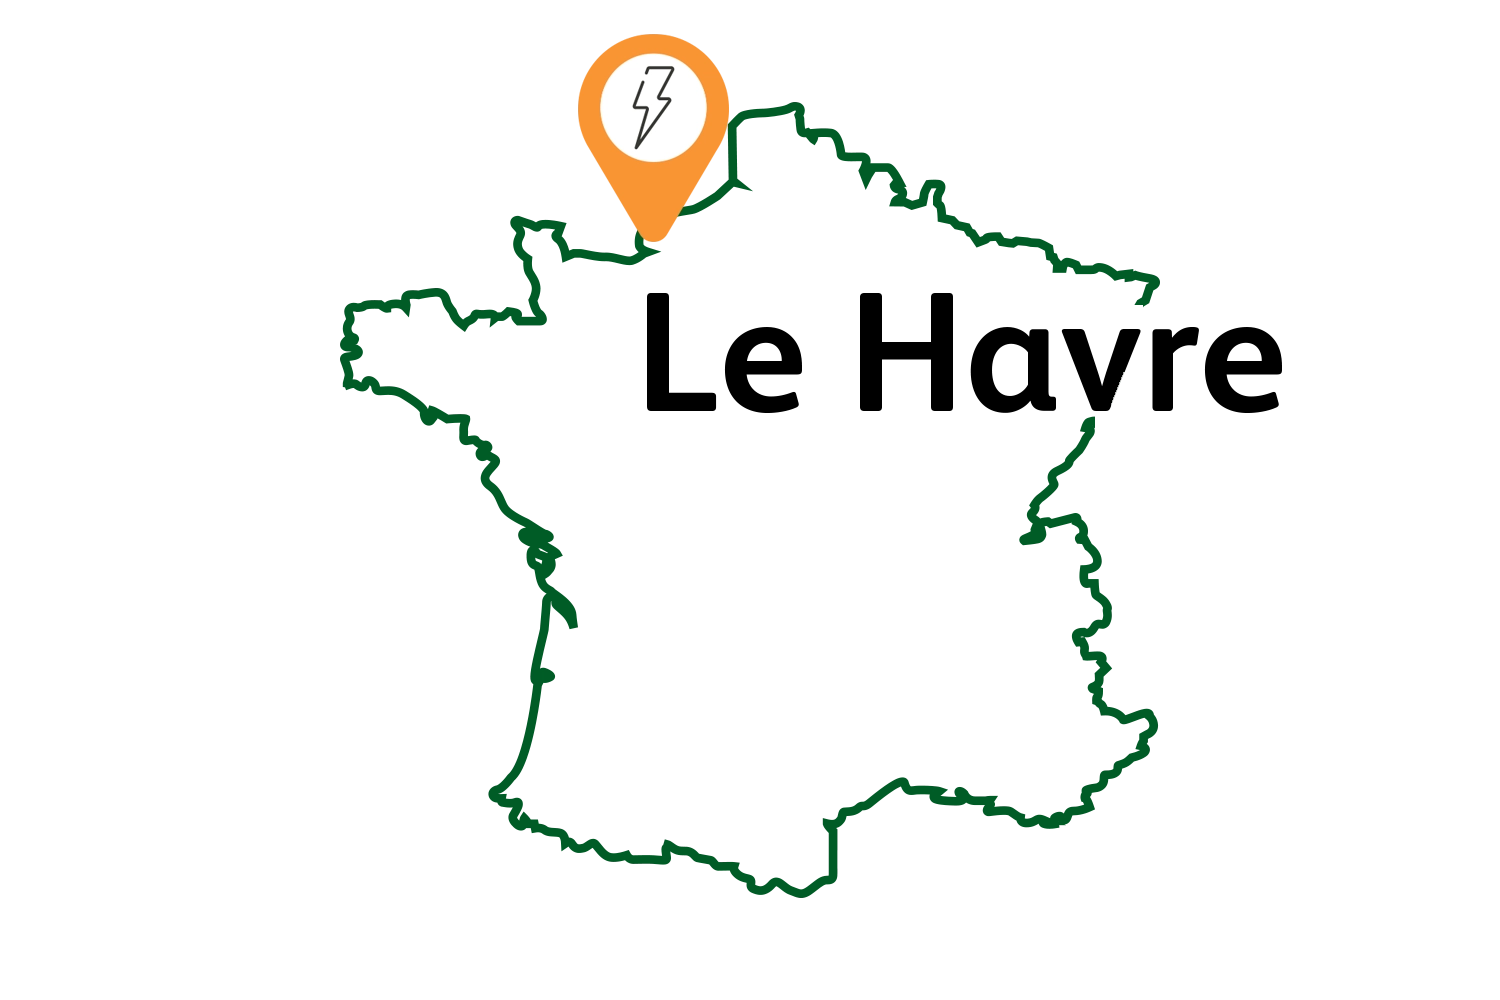 Représentation schématique d'une carte de France avec mise en évidence du réseau public de recharge pour voitures électriques au Havre.